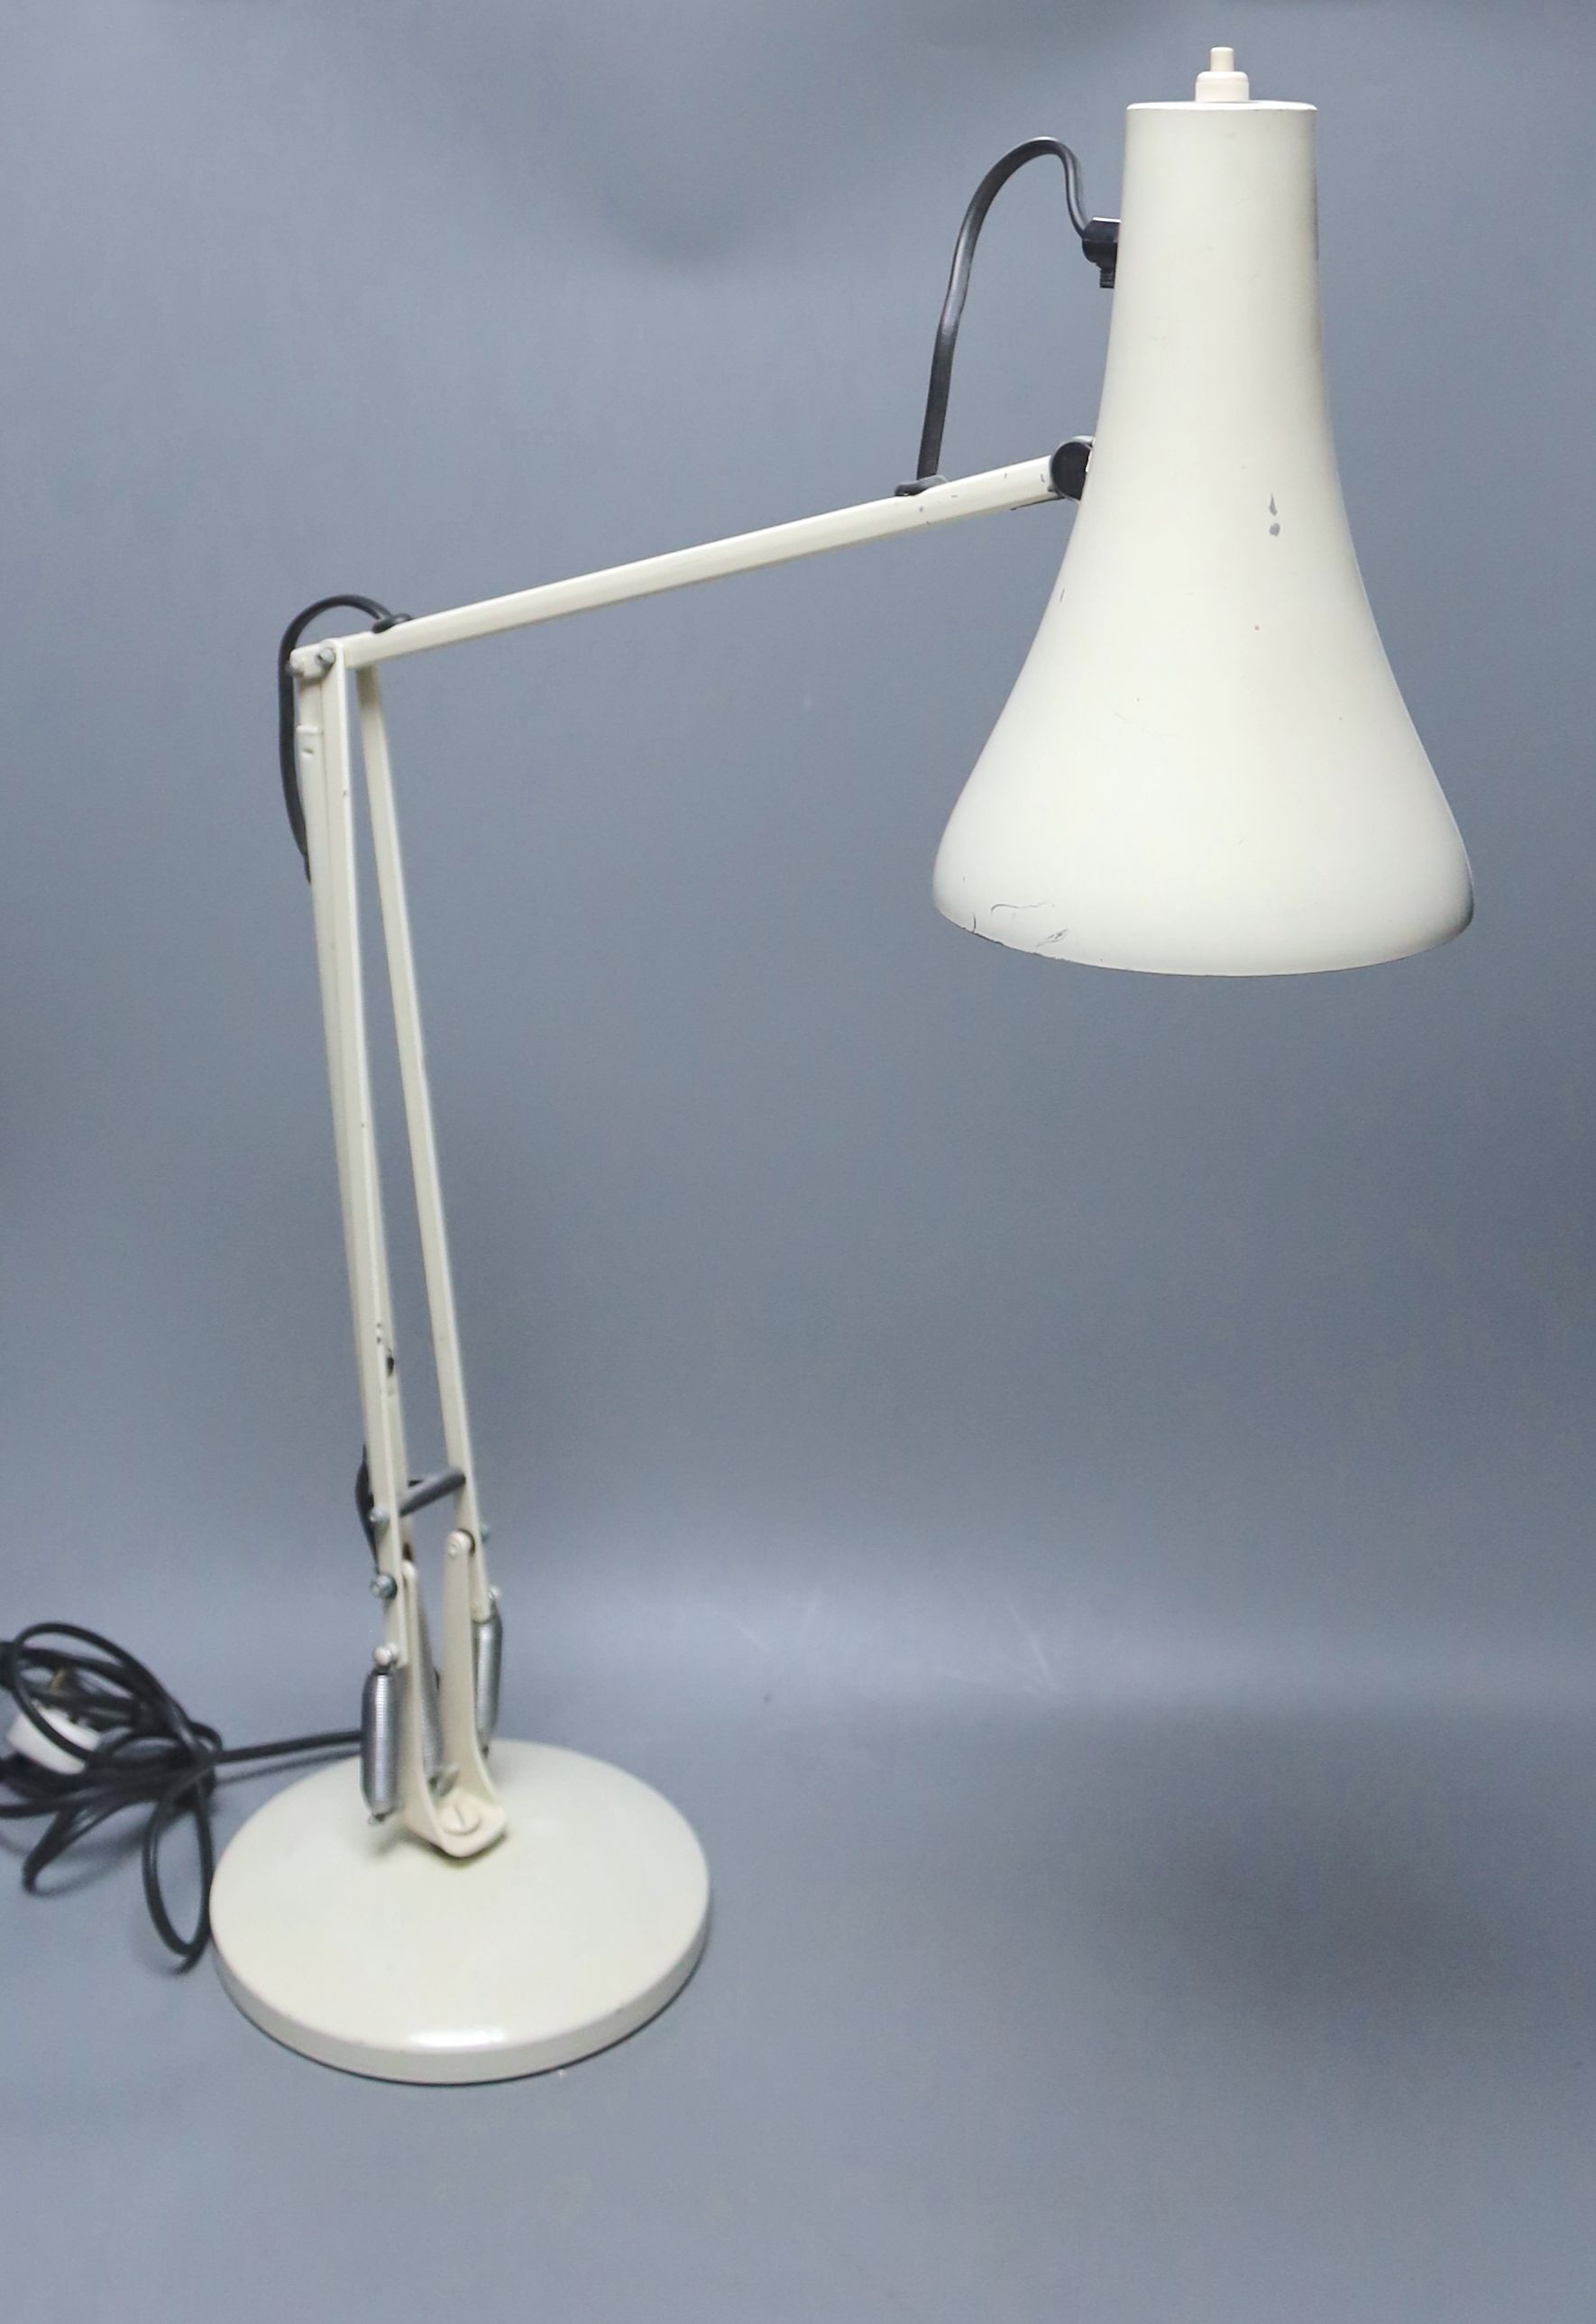 A cream anglepoise lamp, 83 cms high.